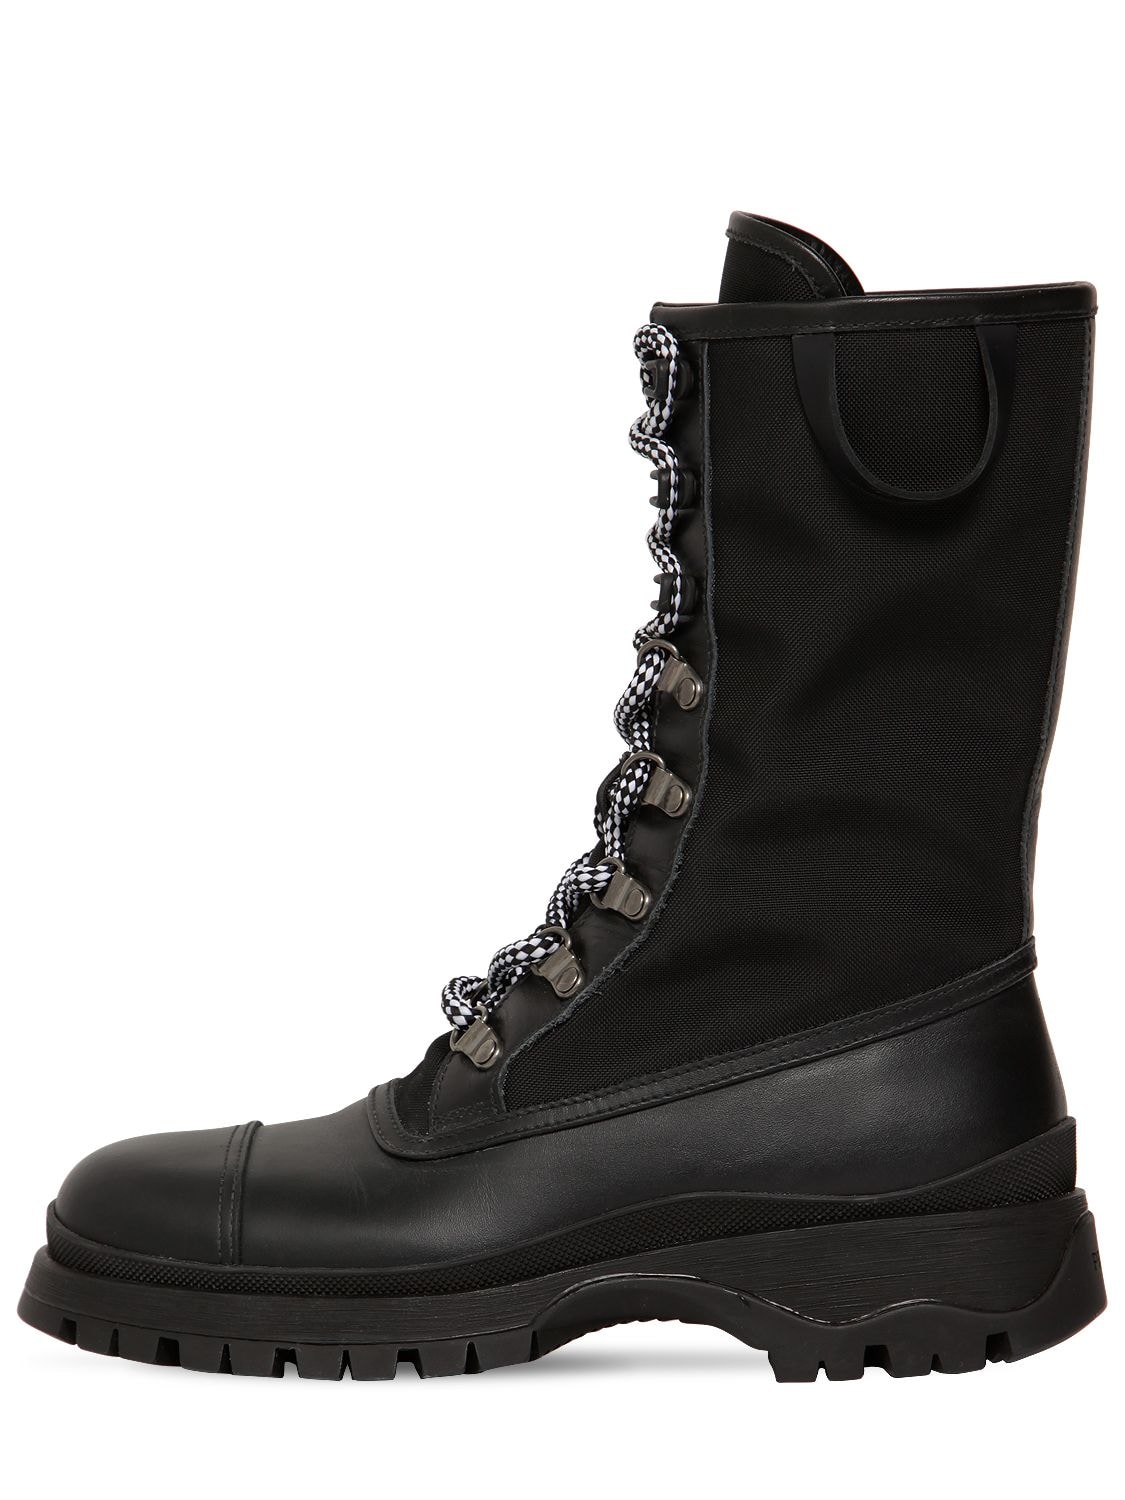 nylon combat boots